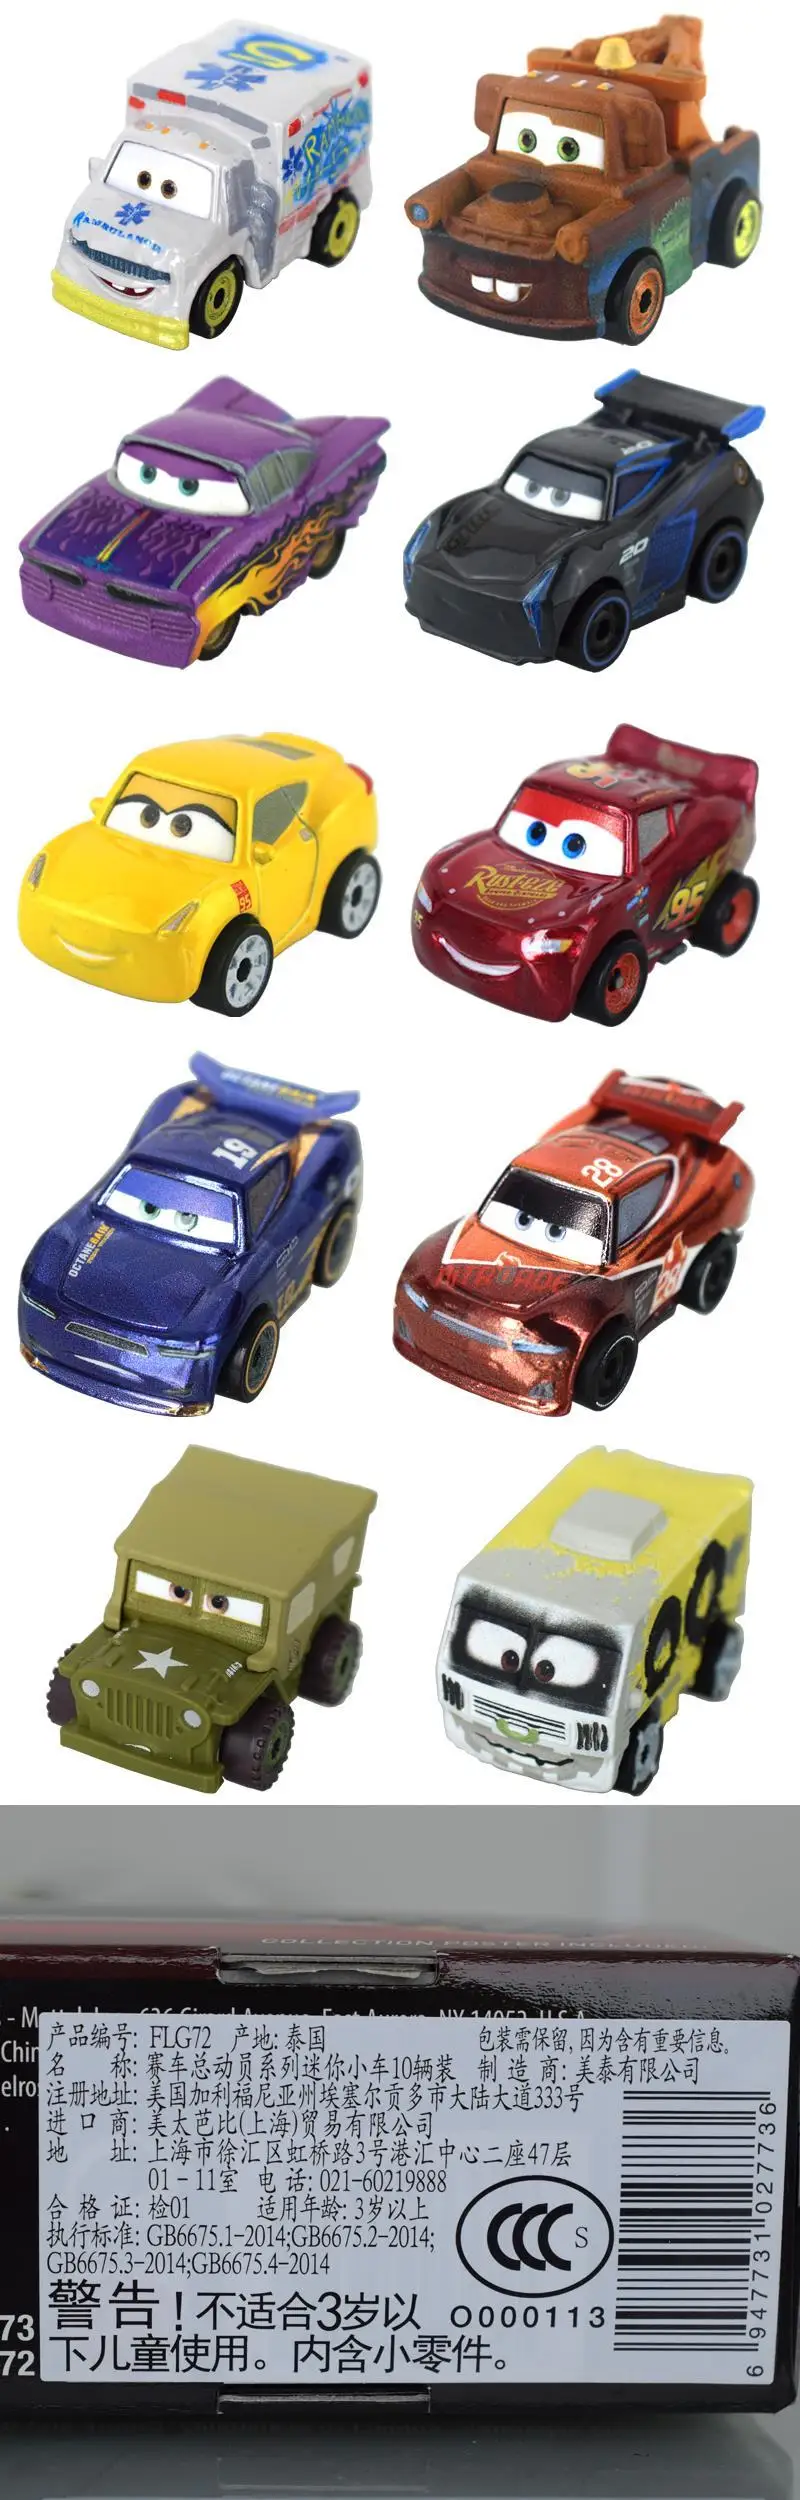 Best Buy: Disney Pixar Cars Mini Racers Racer Series (10-Pack